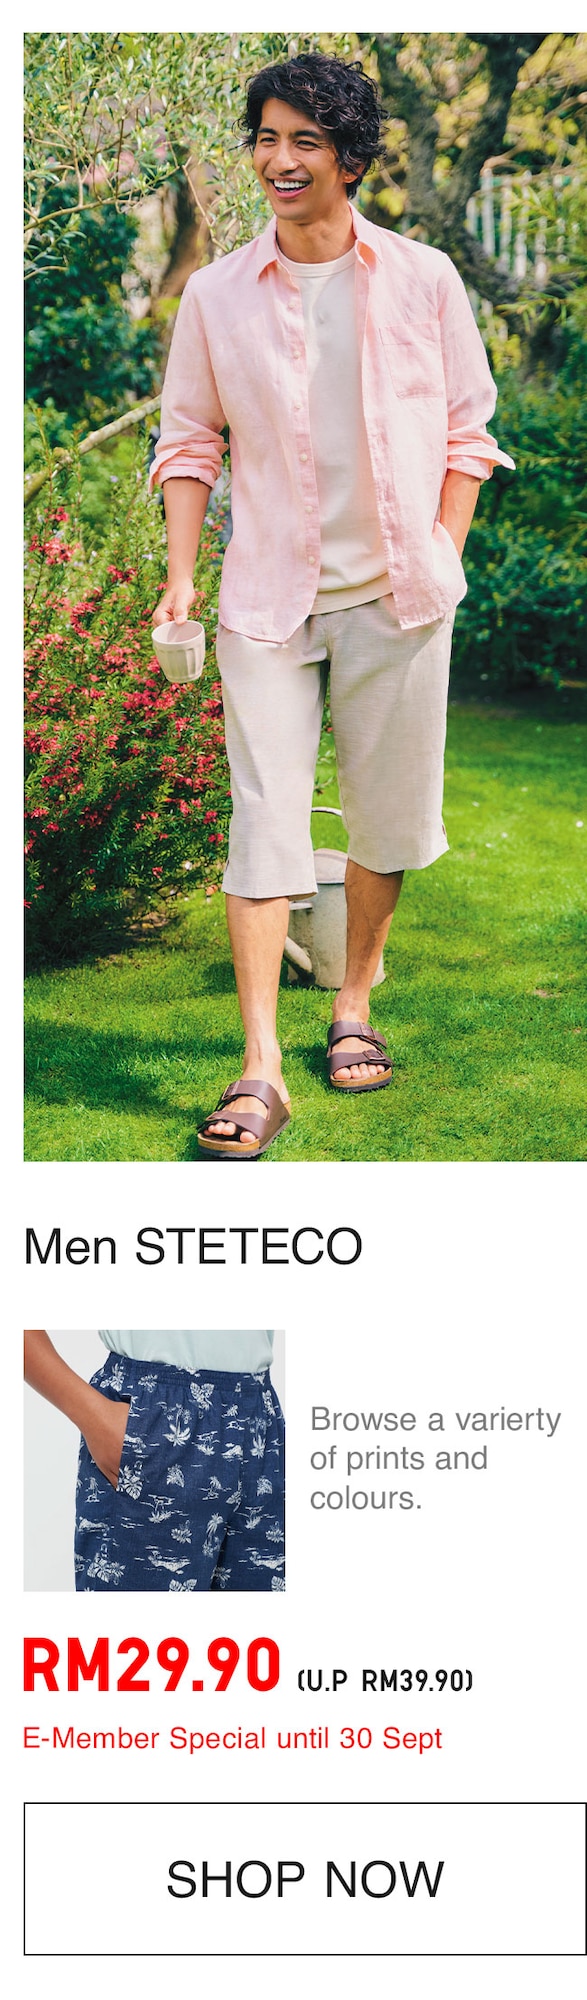 MEN STETECO SHORTS